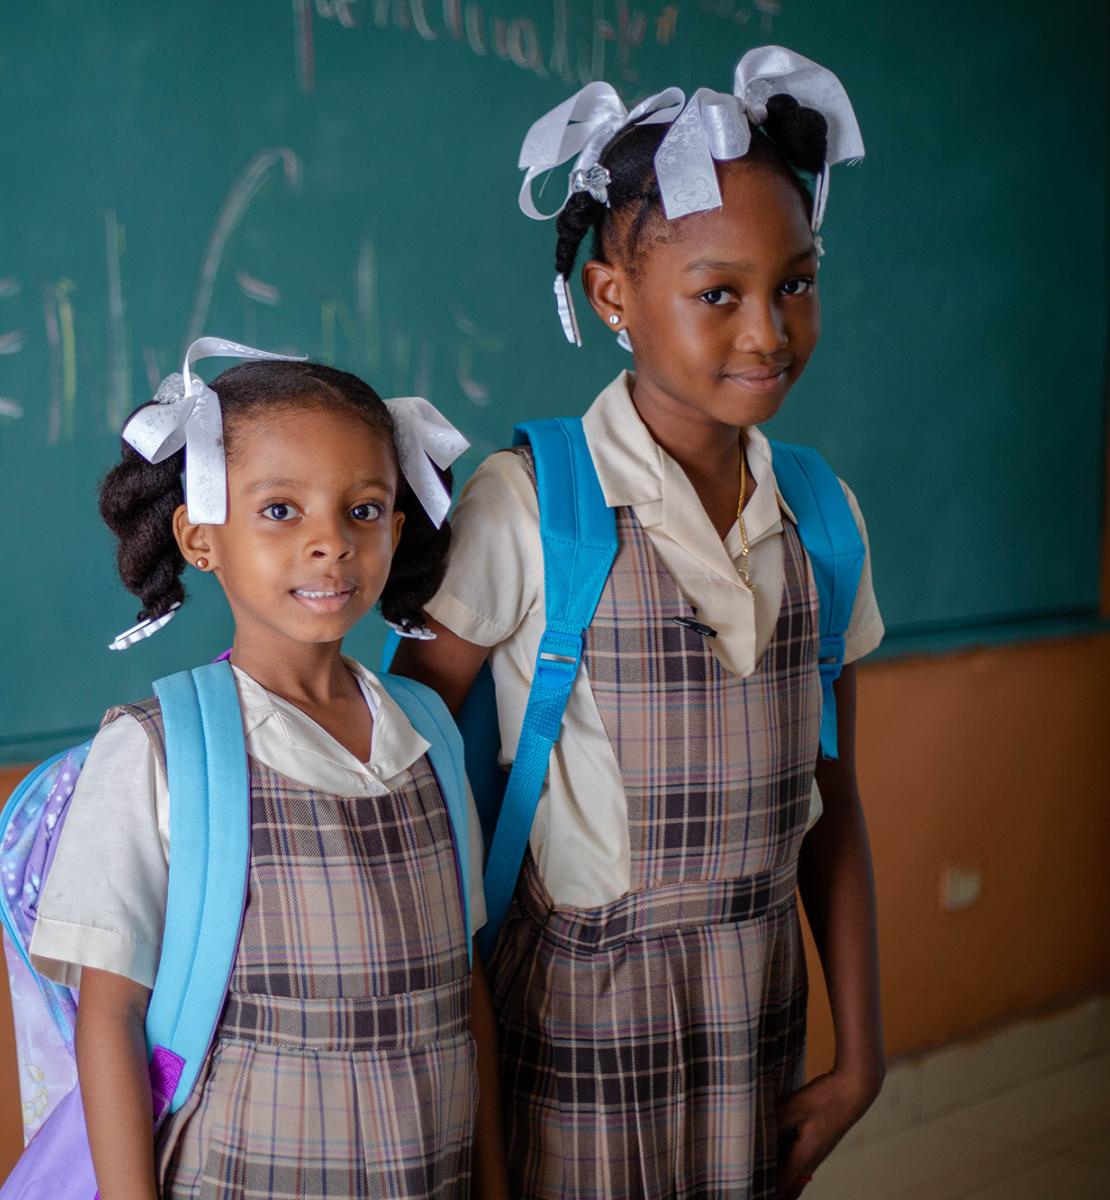 Dos niñas con mochila y uniforme escolar se sitúan frente a una pizarra.